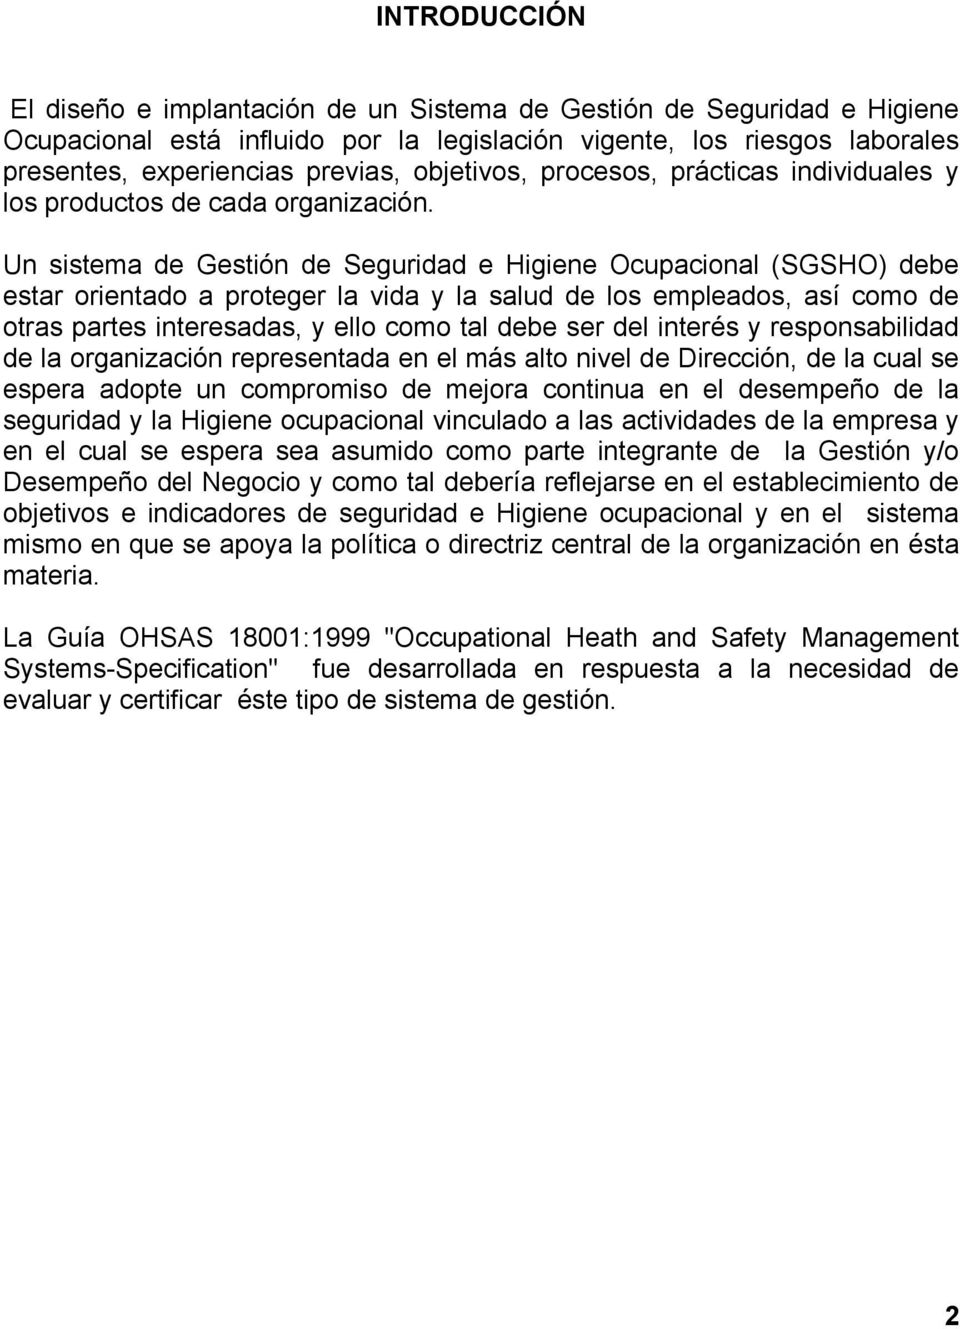 Un sistema de Gestión de Seguridad e Higiene Ocupacional (SGSHO) debe estar orientado a proteger la vida y la salud de los empleados, así como de otras partes interesadas, y ello como tal debe ser